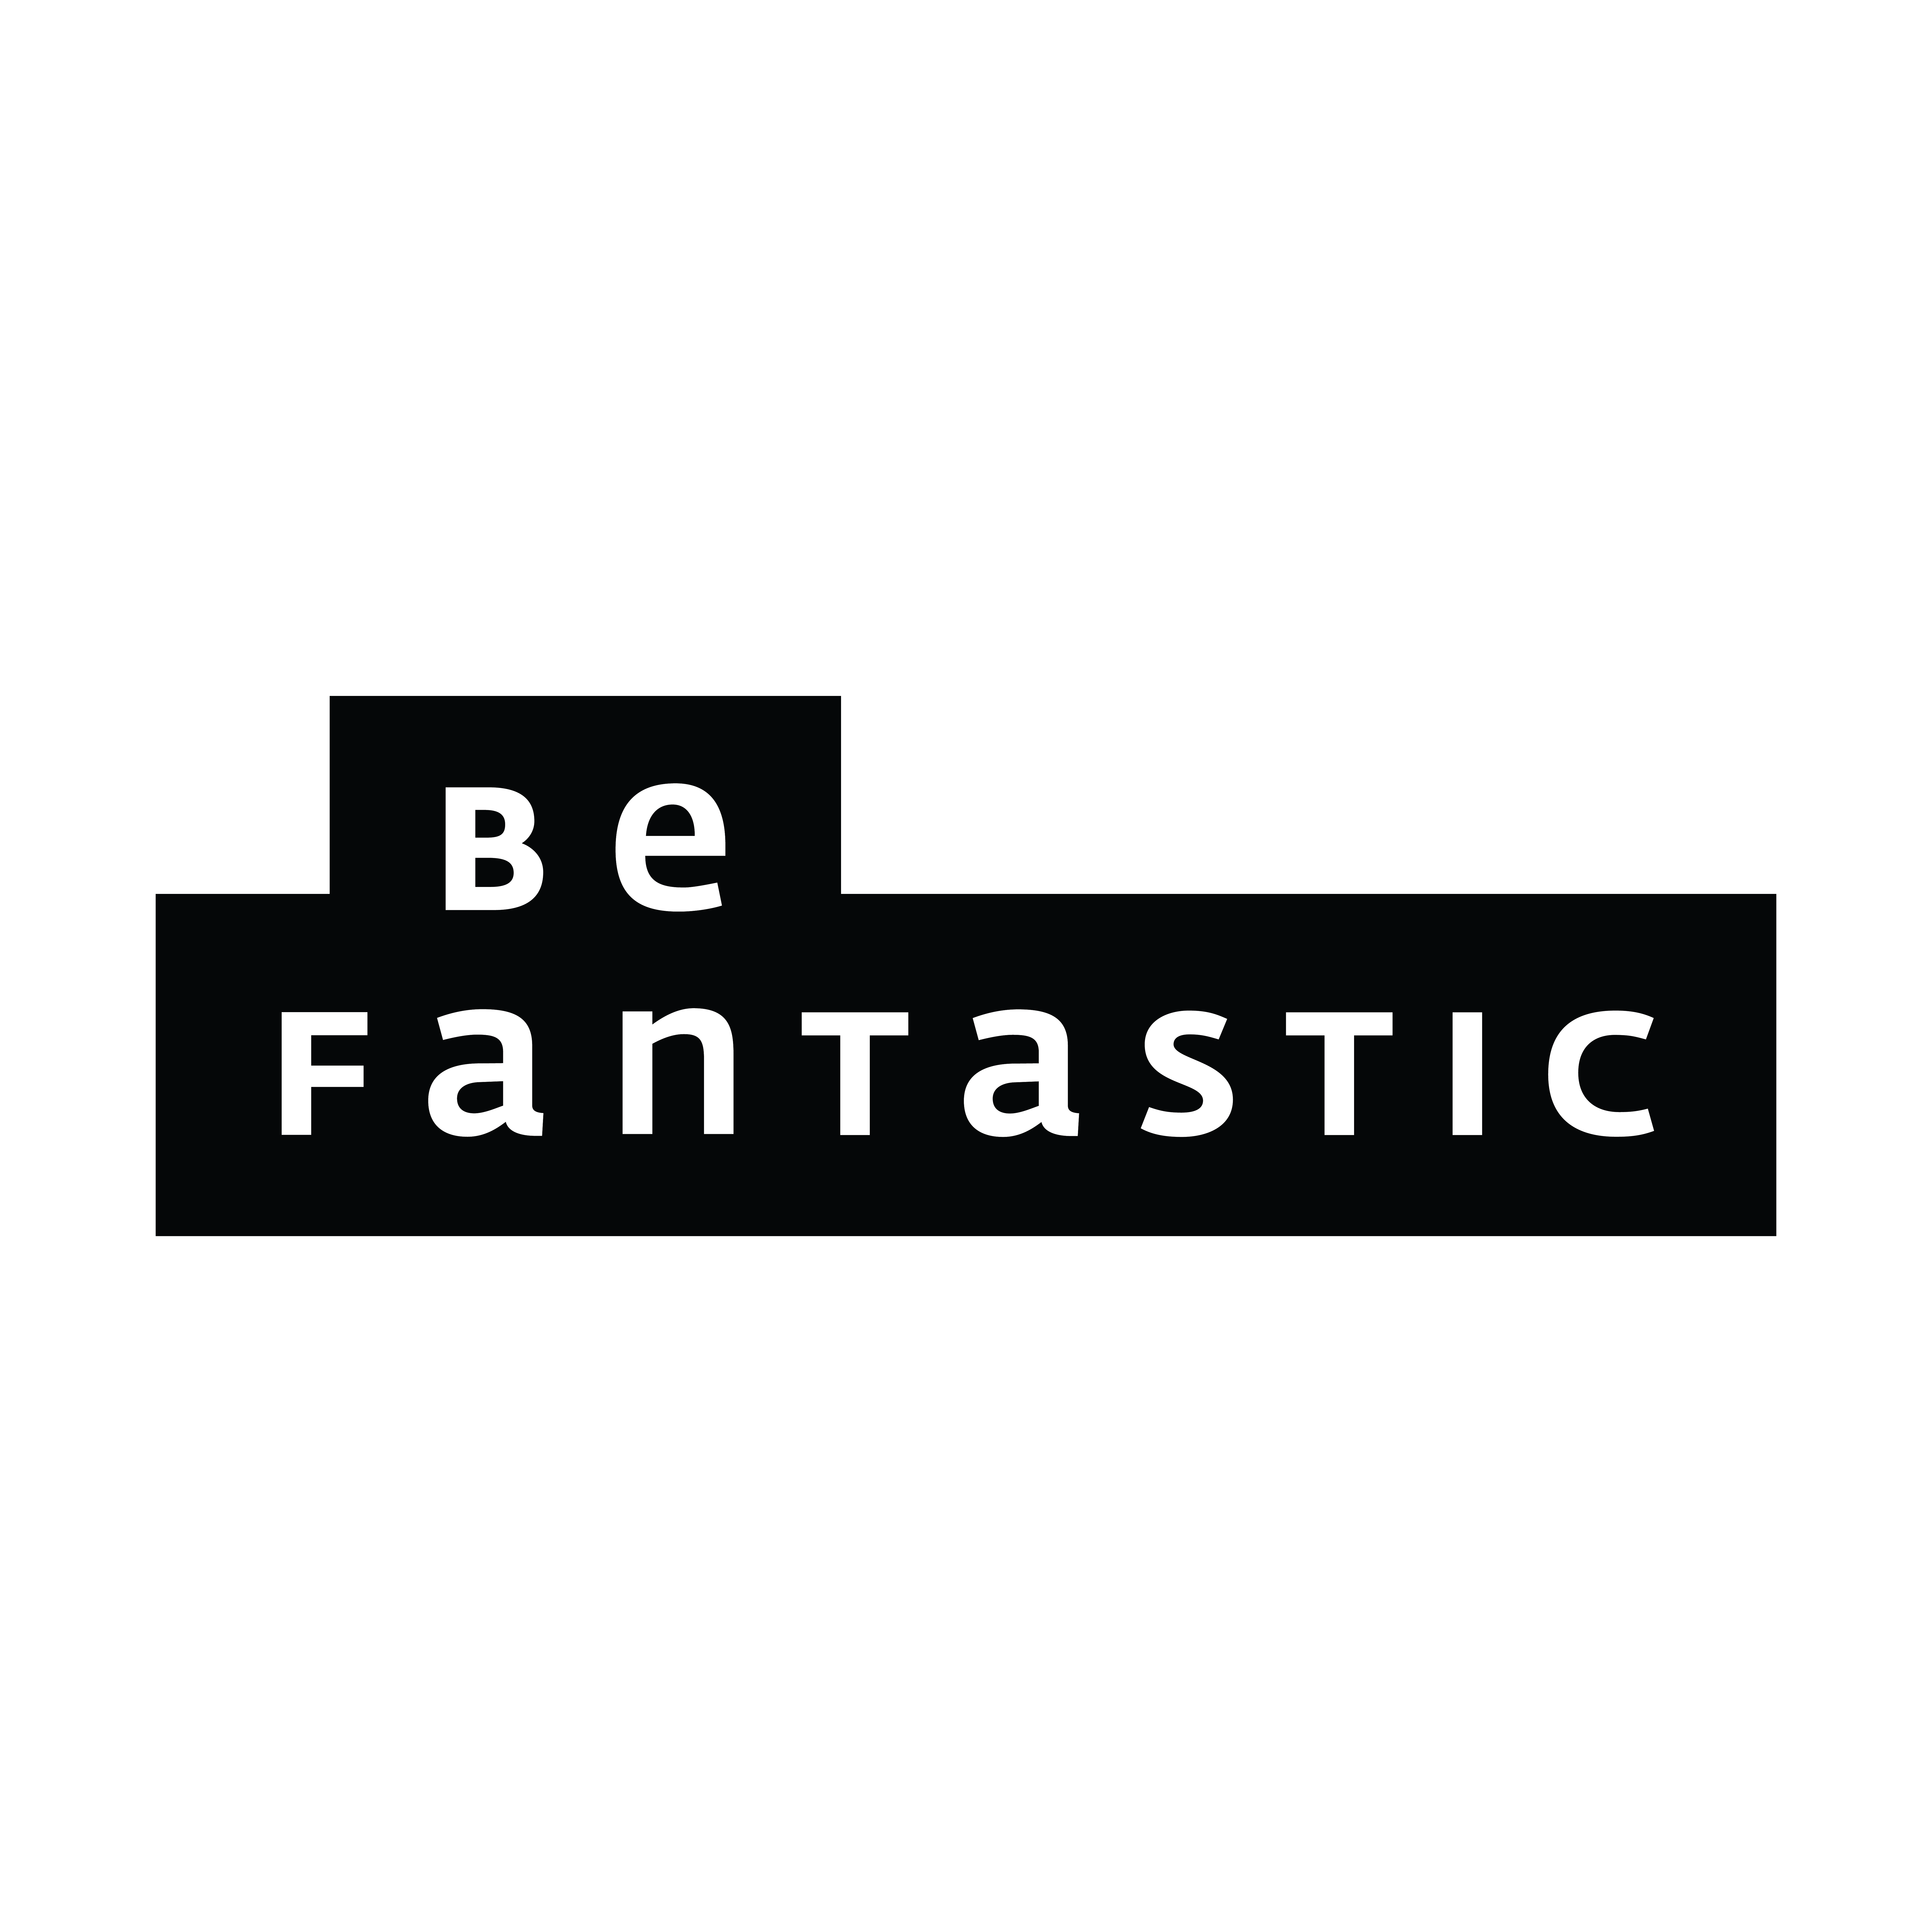 Be Fantastic